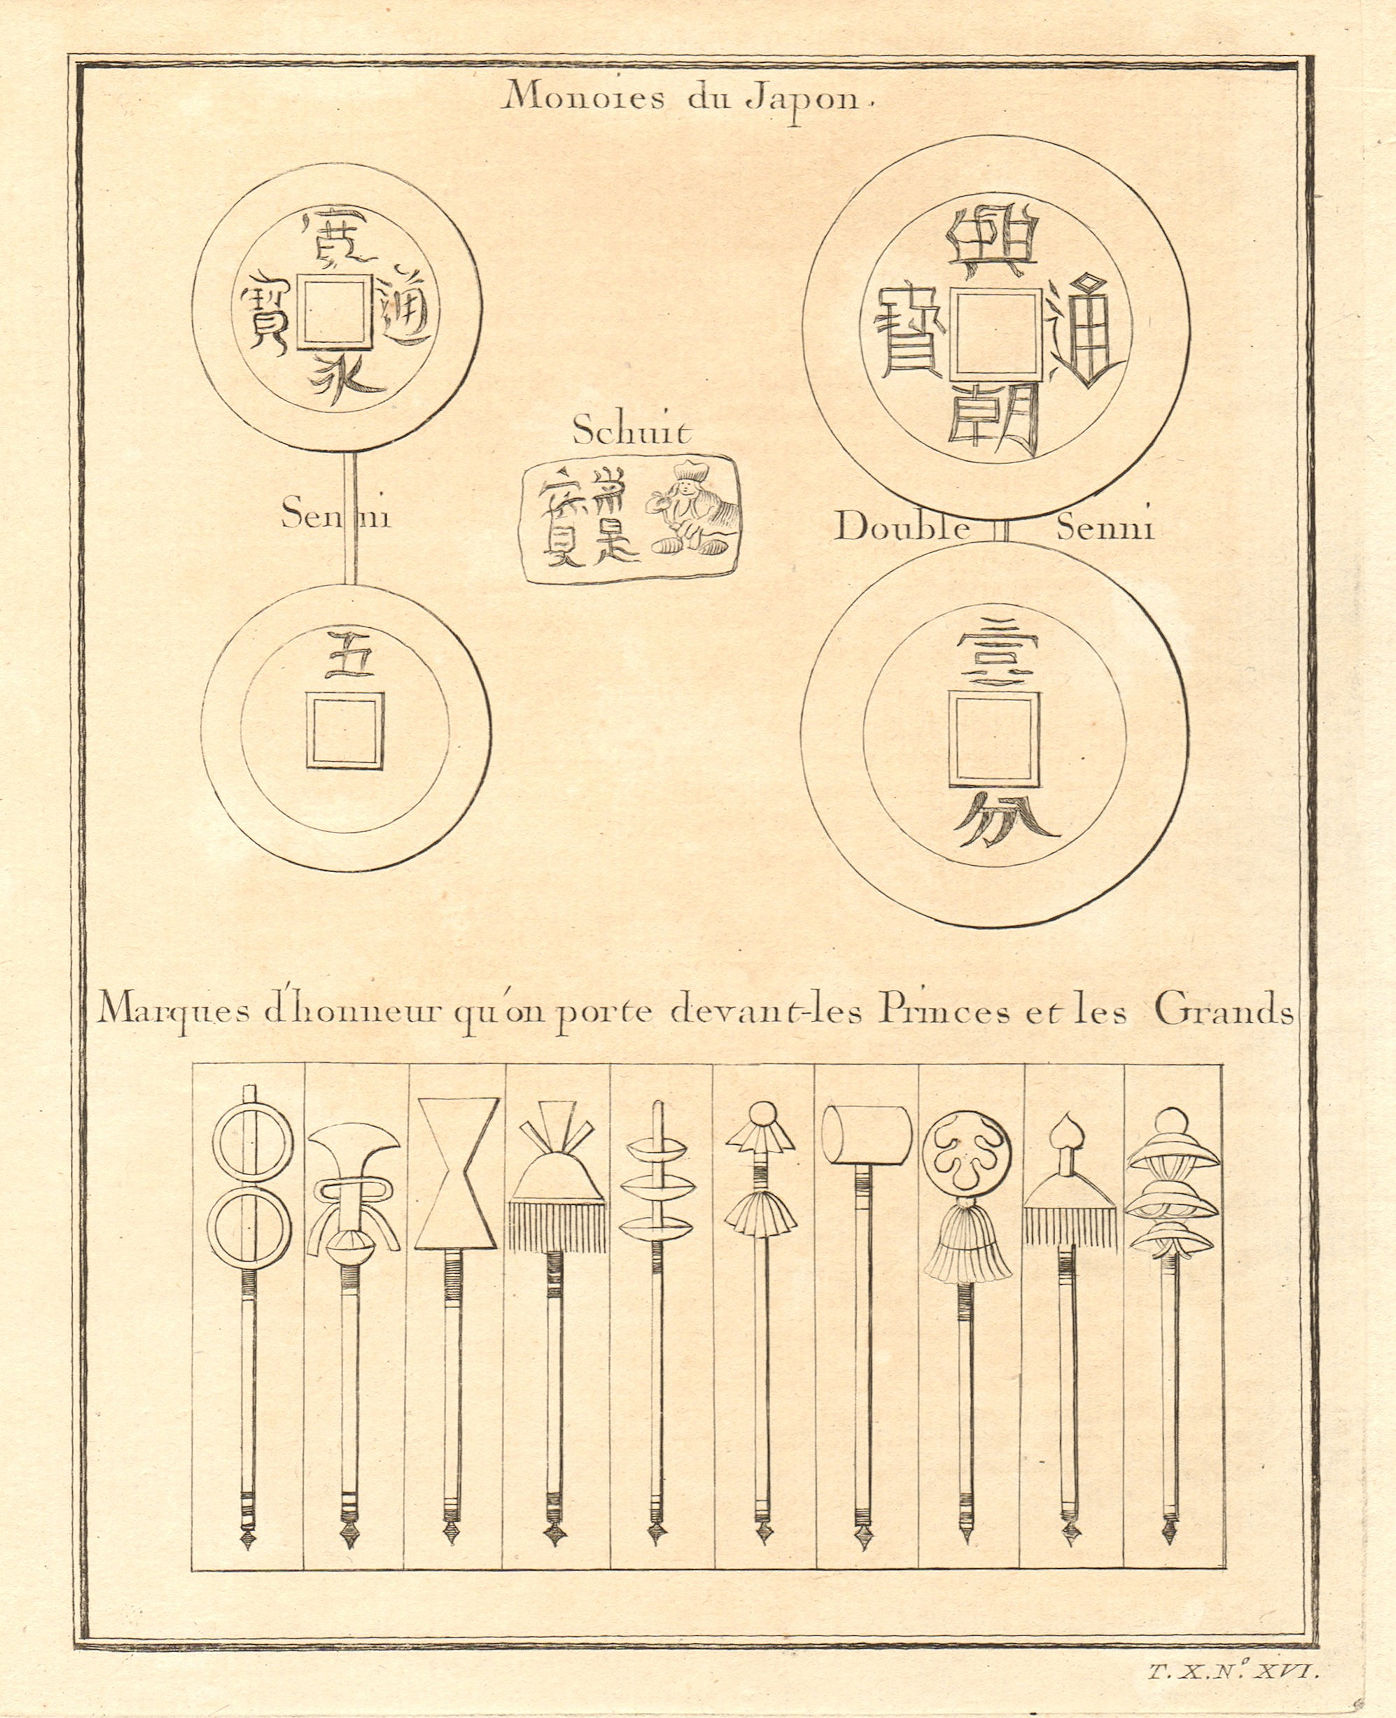 Associate Product Monnoies du Japon & Marques d’honneur. Japanese coins & Badges of honour 1752